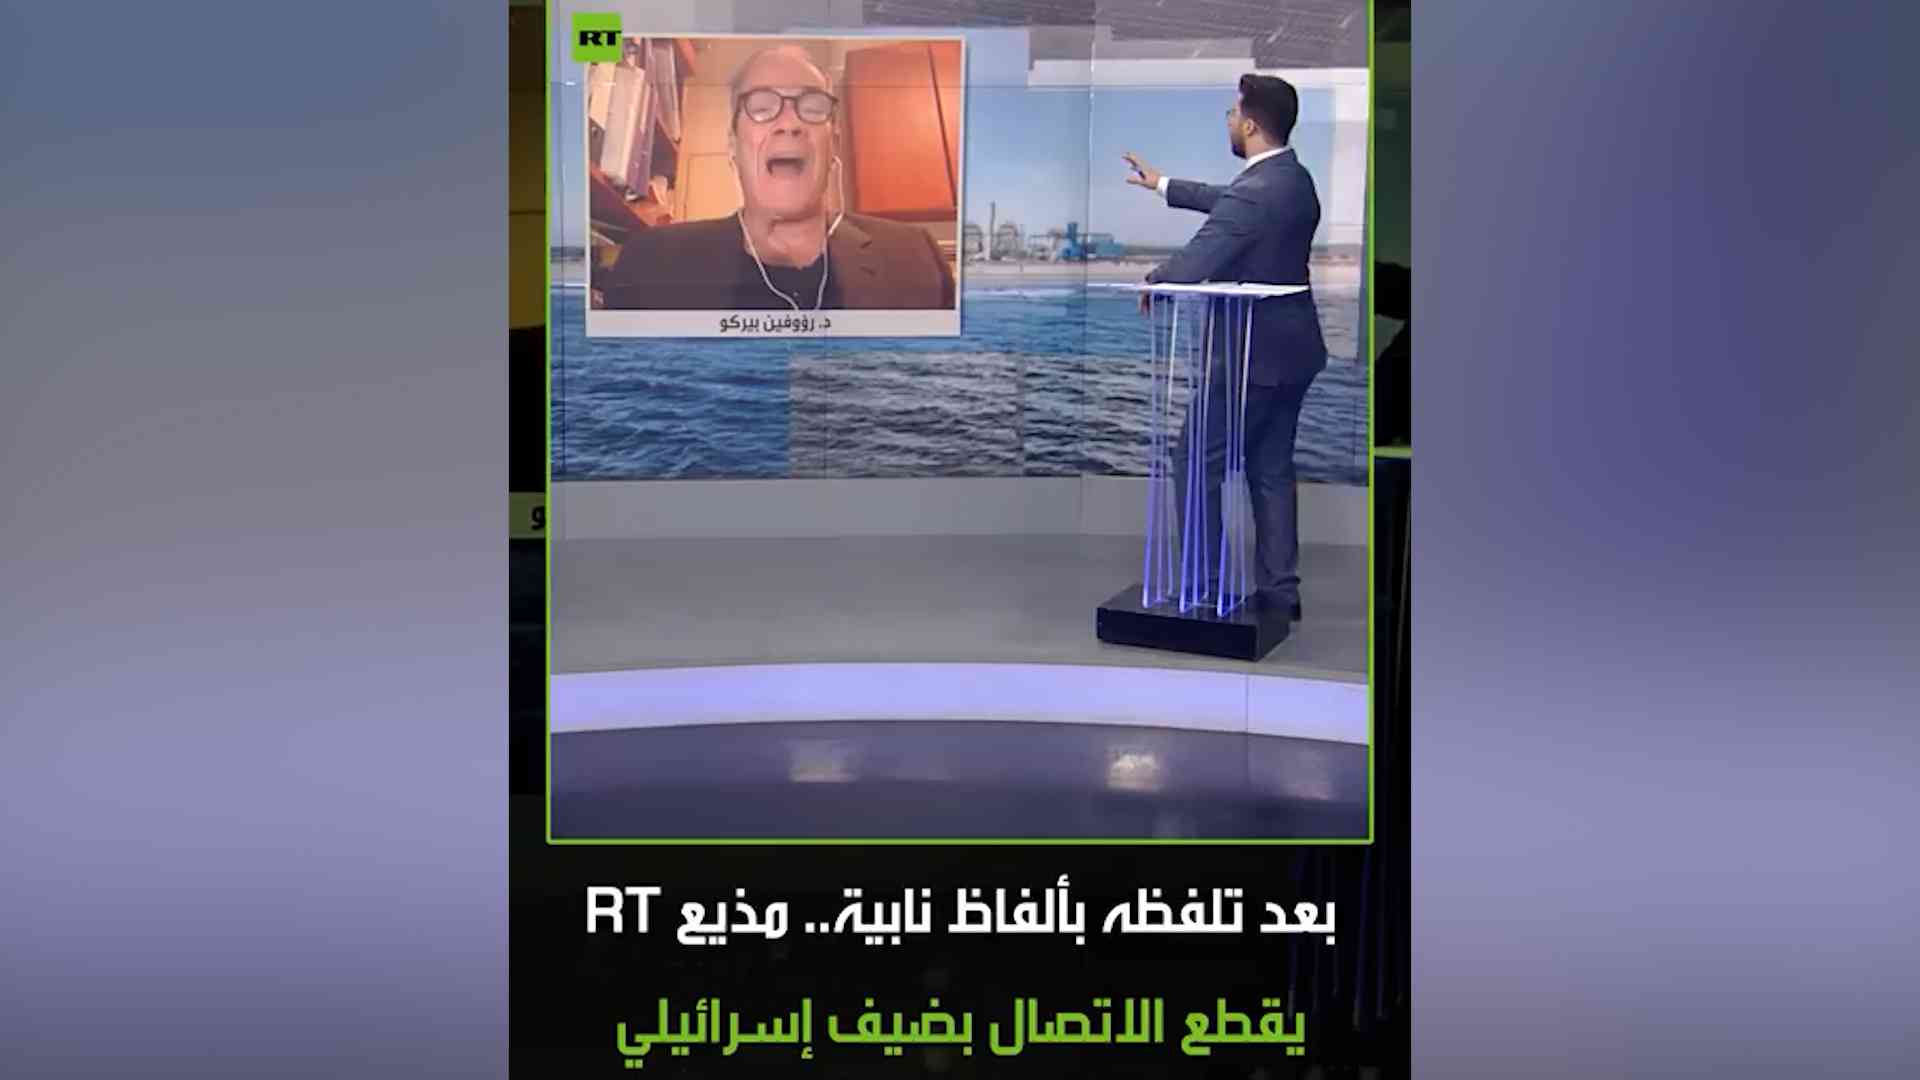 بعد شتمه المذيع.. طرد إسرائيلي من مقابلة على الهواء (فيديو)